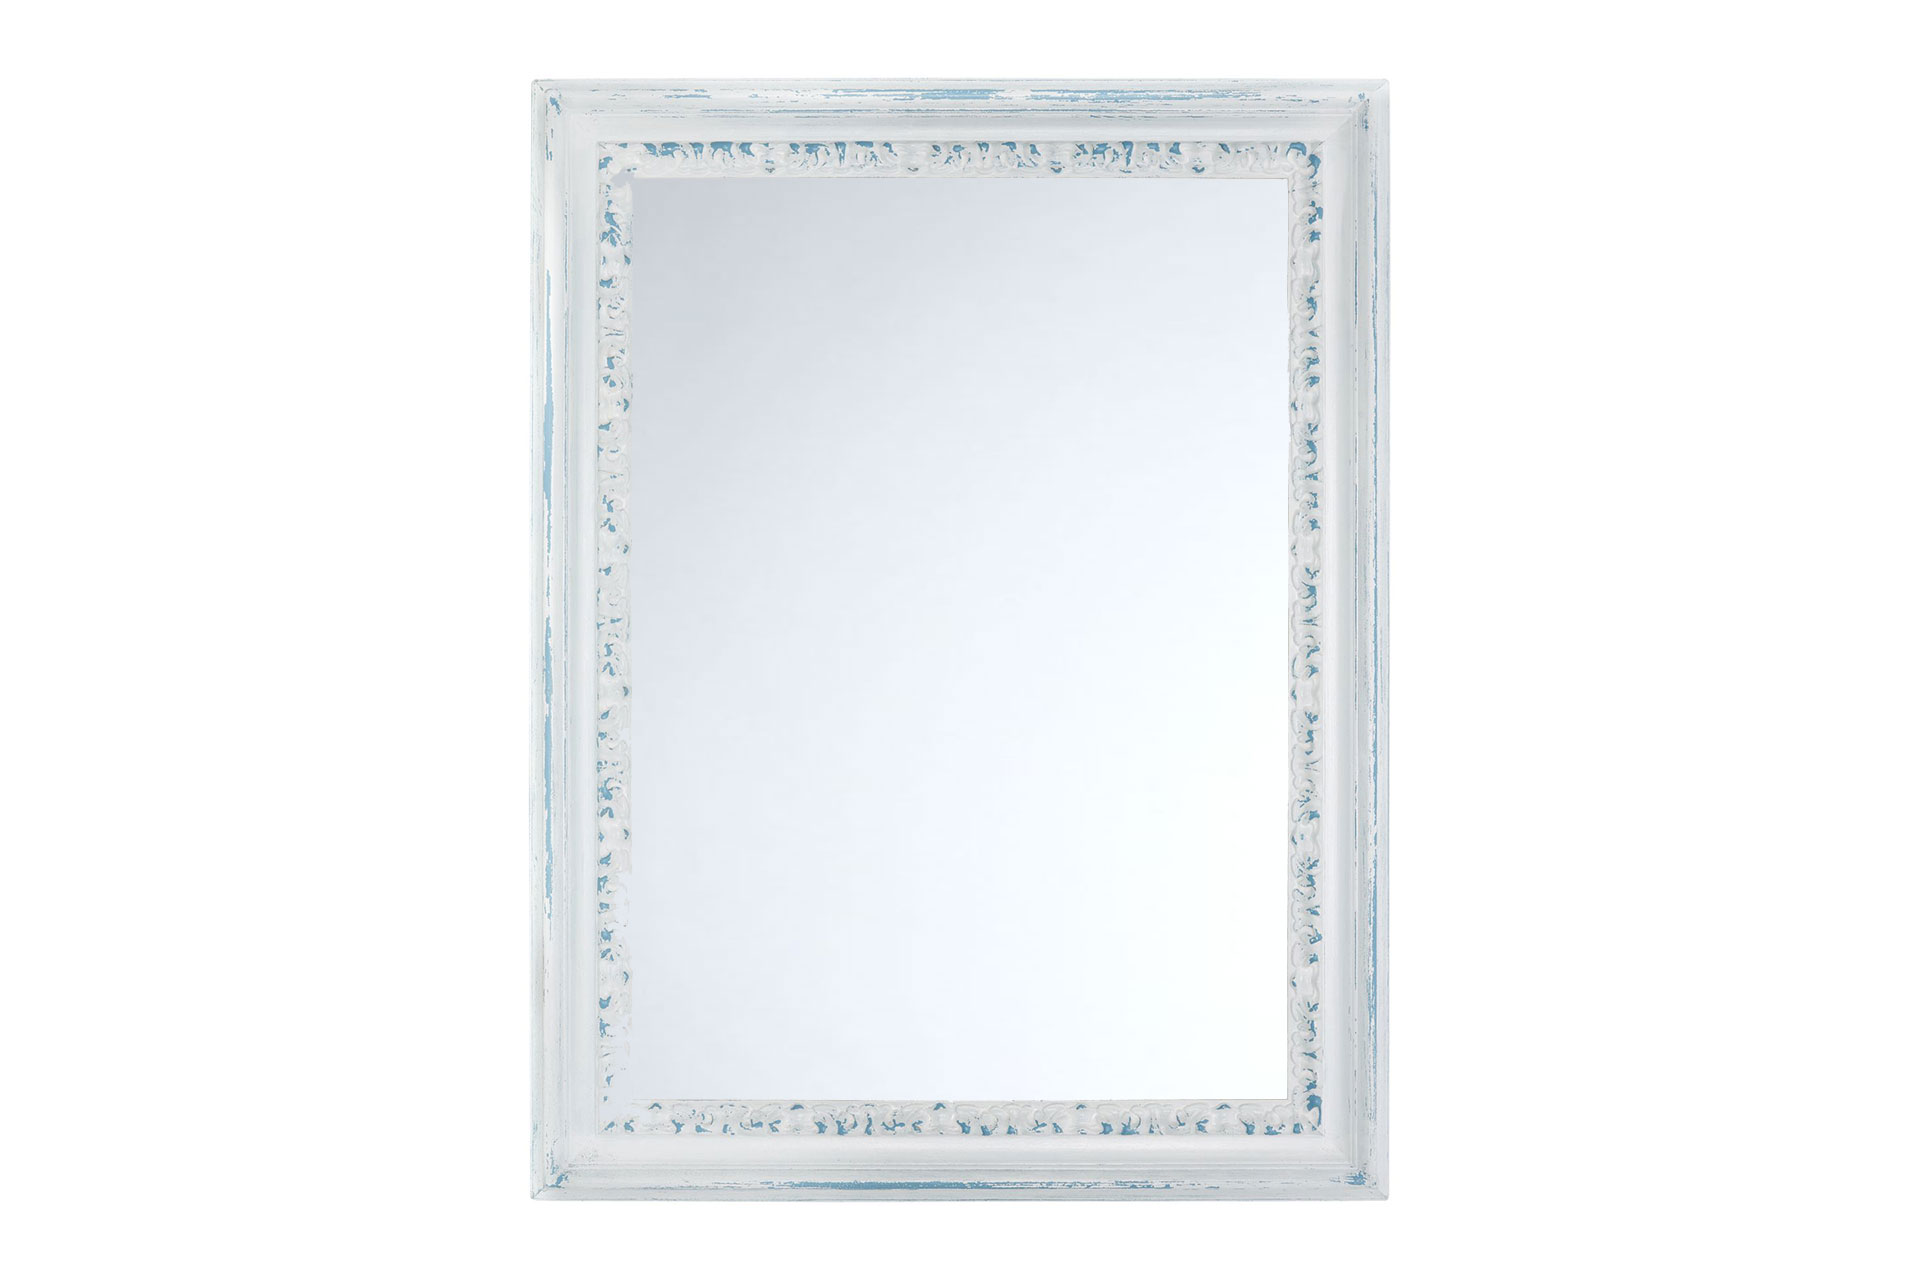 Wandspiegel Modell Korsika Shabby Chic, rechteckig, Finishing: pastellblau, weiss, Shabby-Chic,  Frontansicht Rahmen mit Spiegel